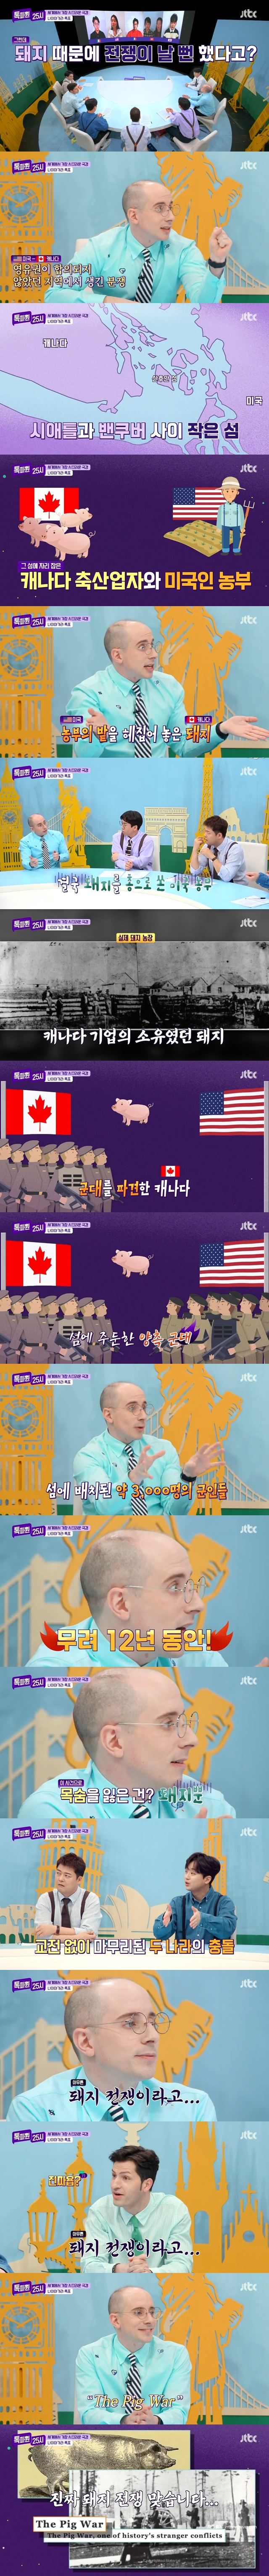 知られざる米国とカナダ戦争